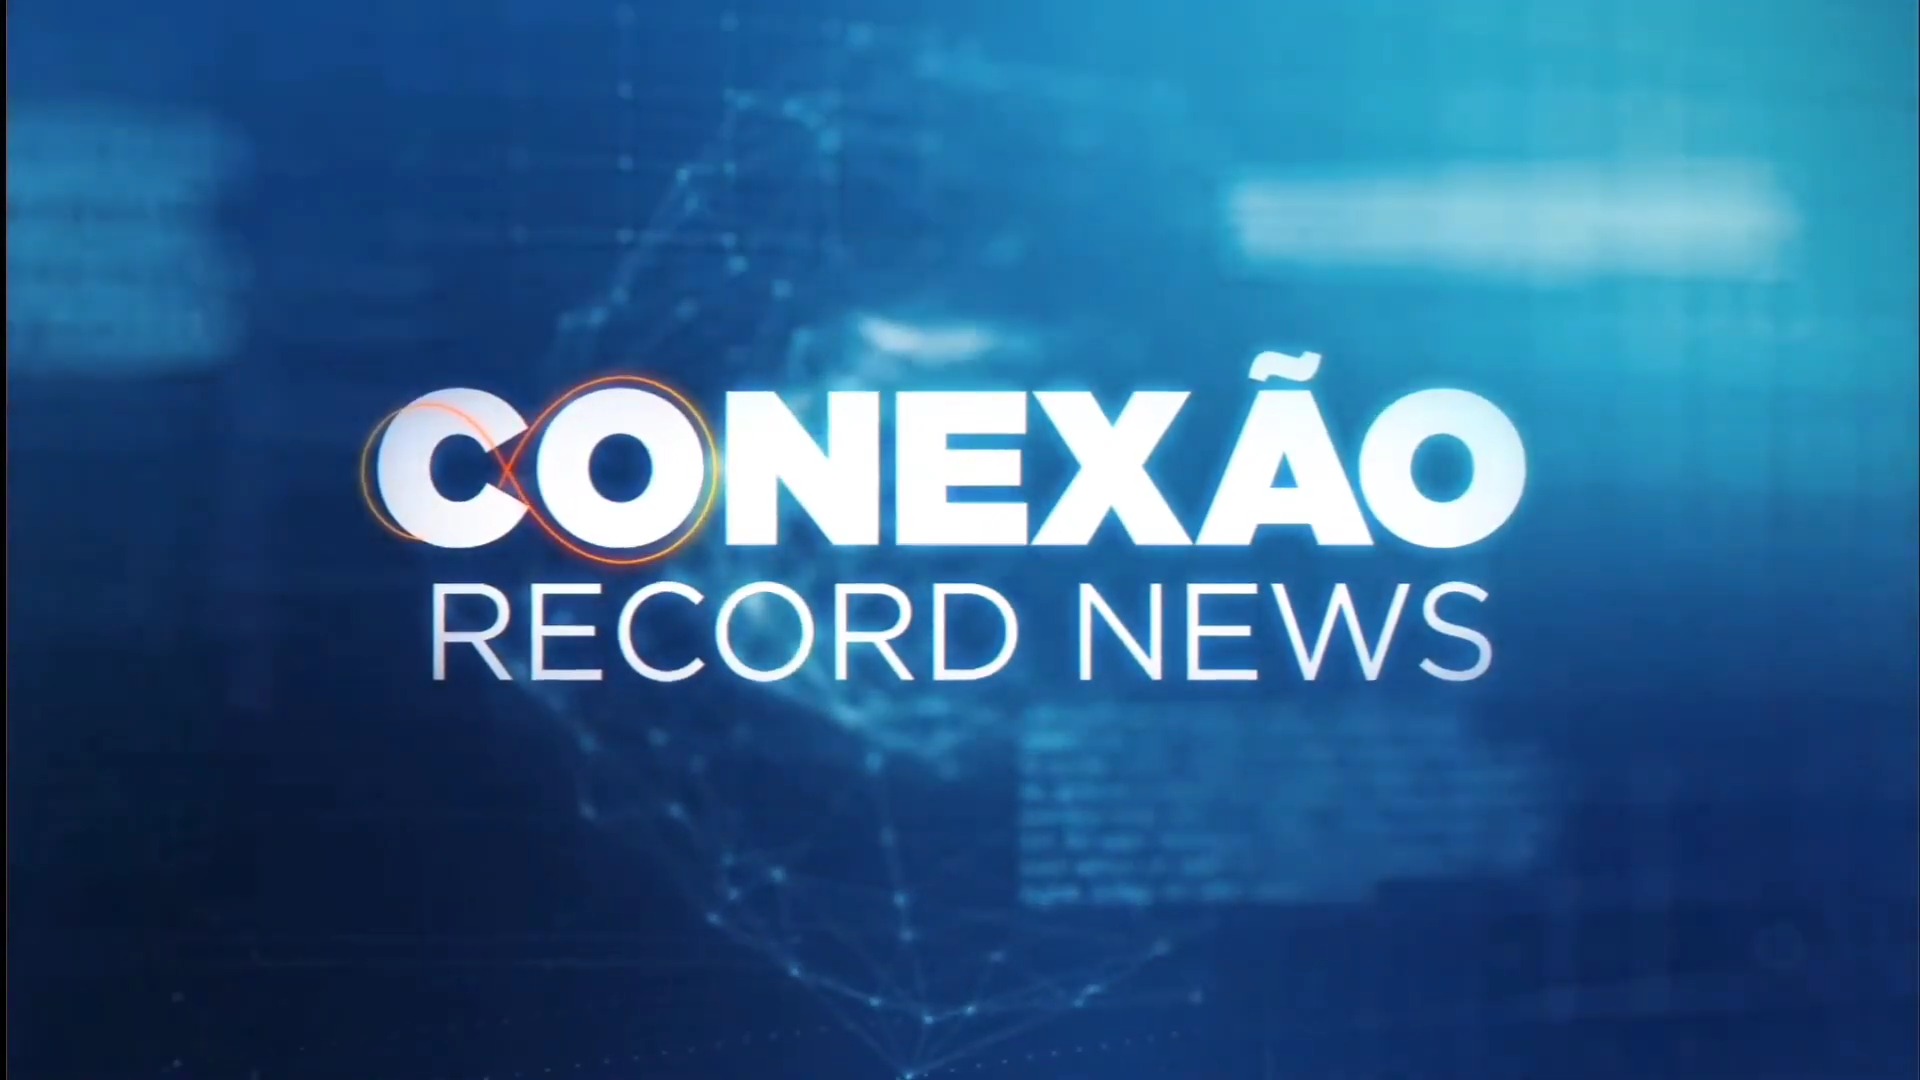 Trecho inicial da estreia do Conexão Record News com Heródoto